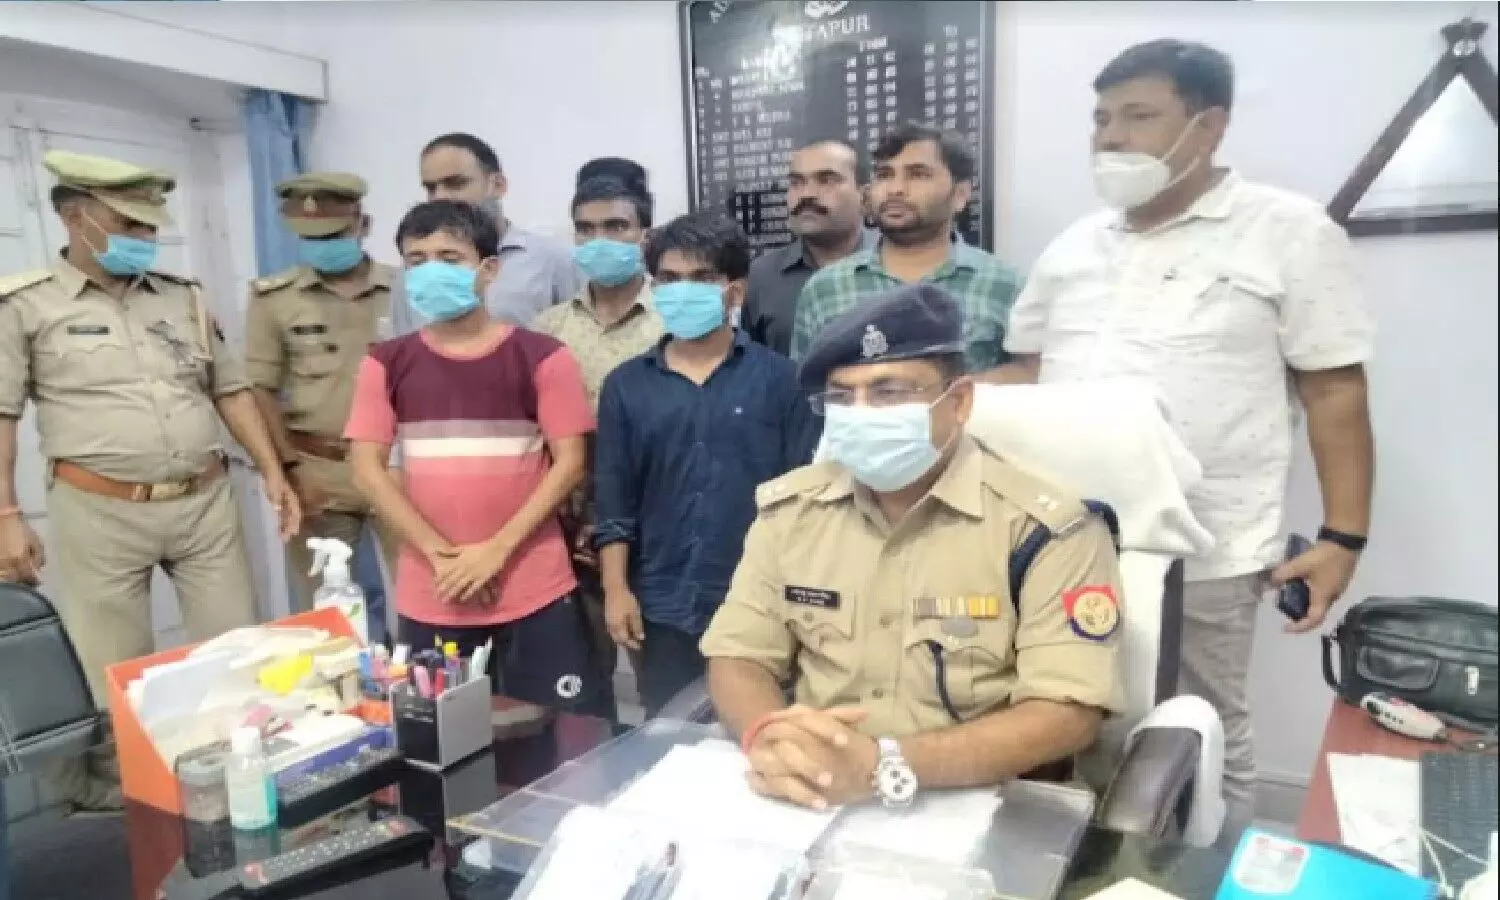 Sitapur : बैंक खाते से रुपये निकालने वाले साइबर गैंग का पर्दाफाश, तीन लोग गिरफ्तार